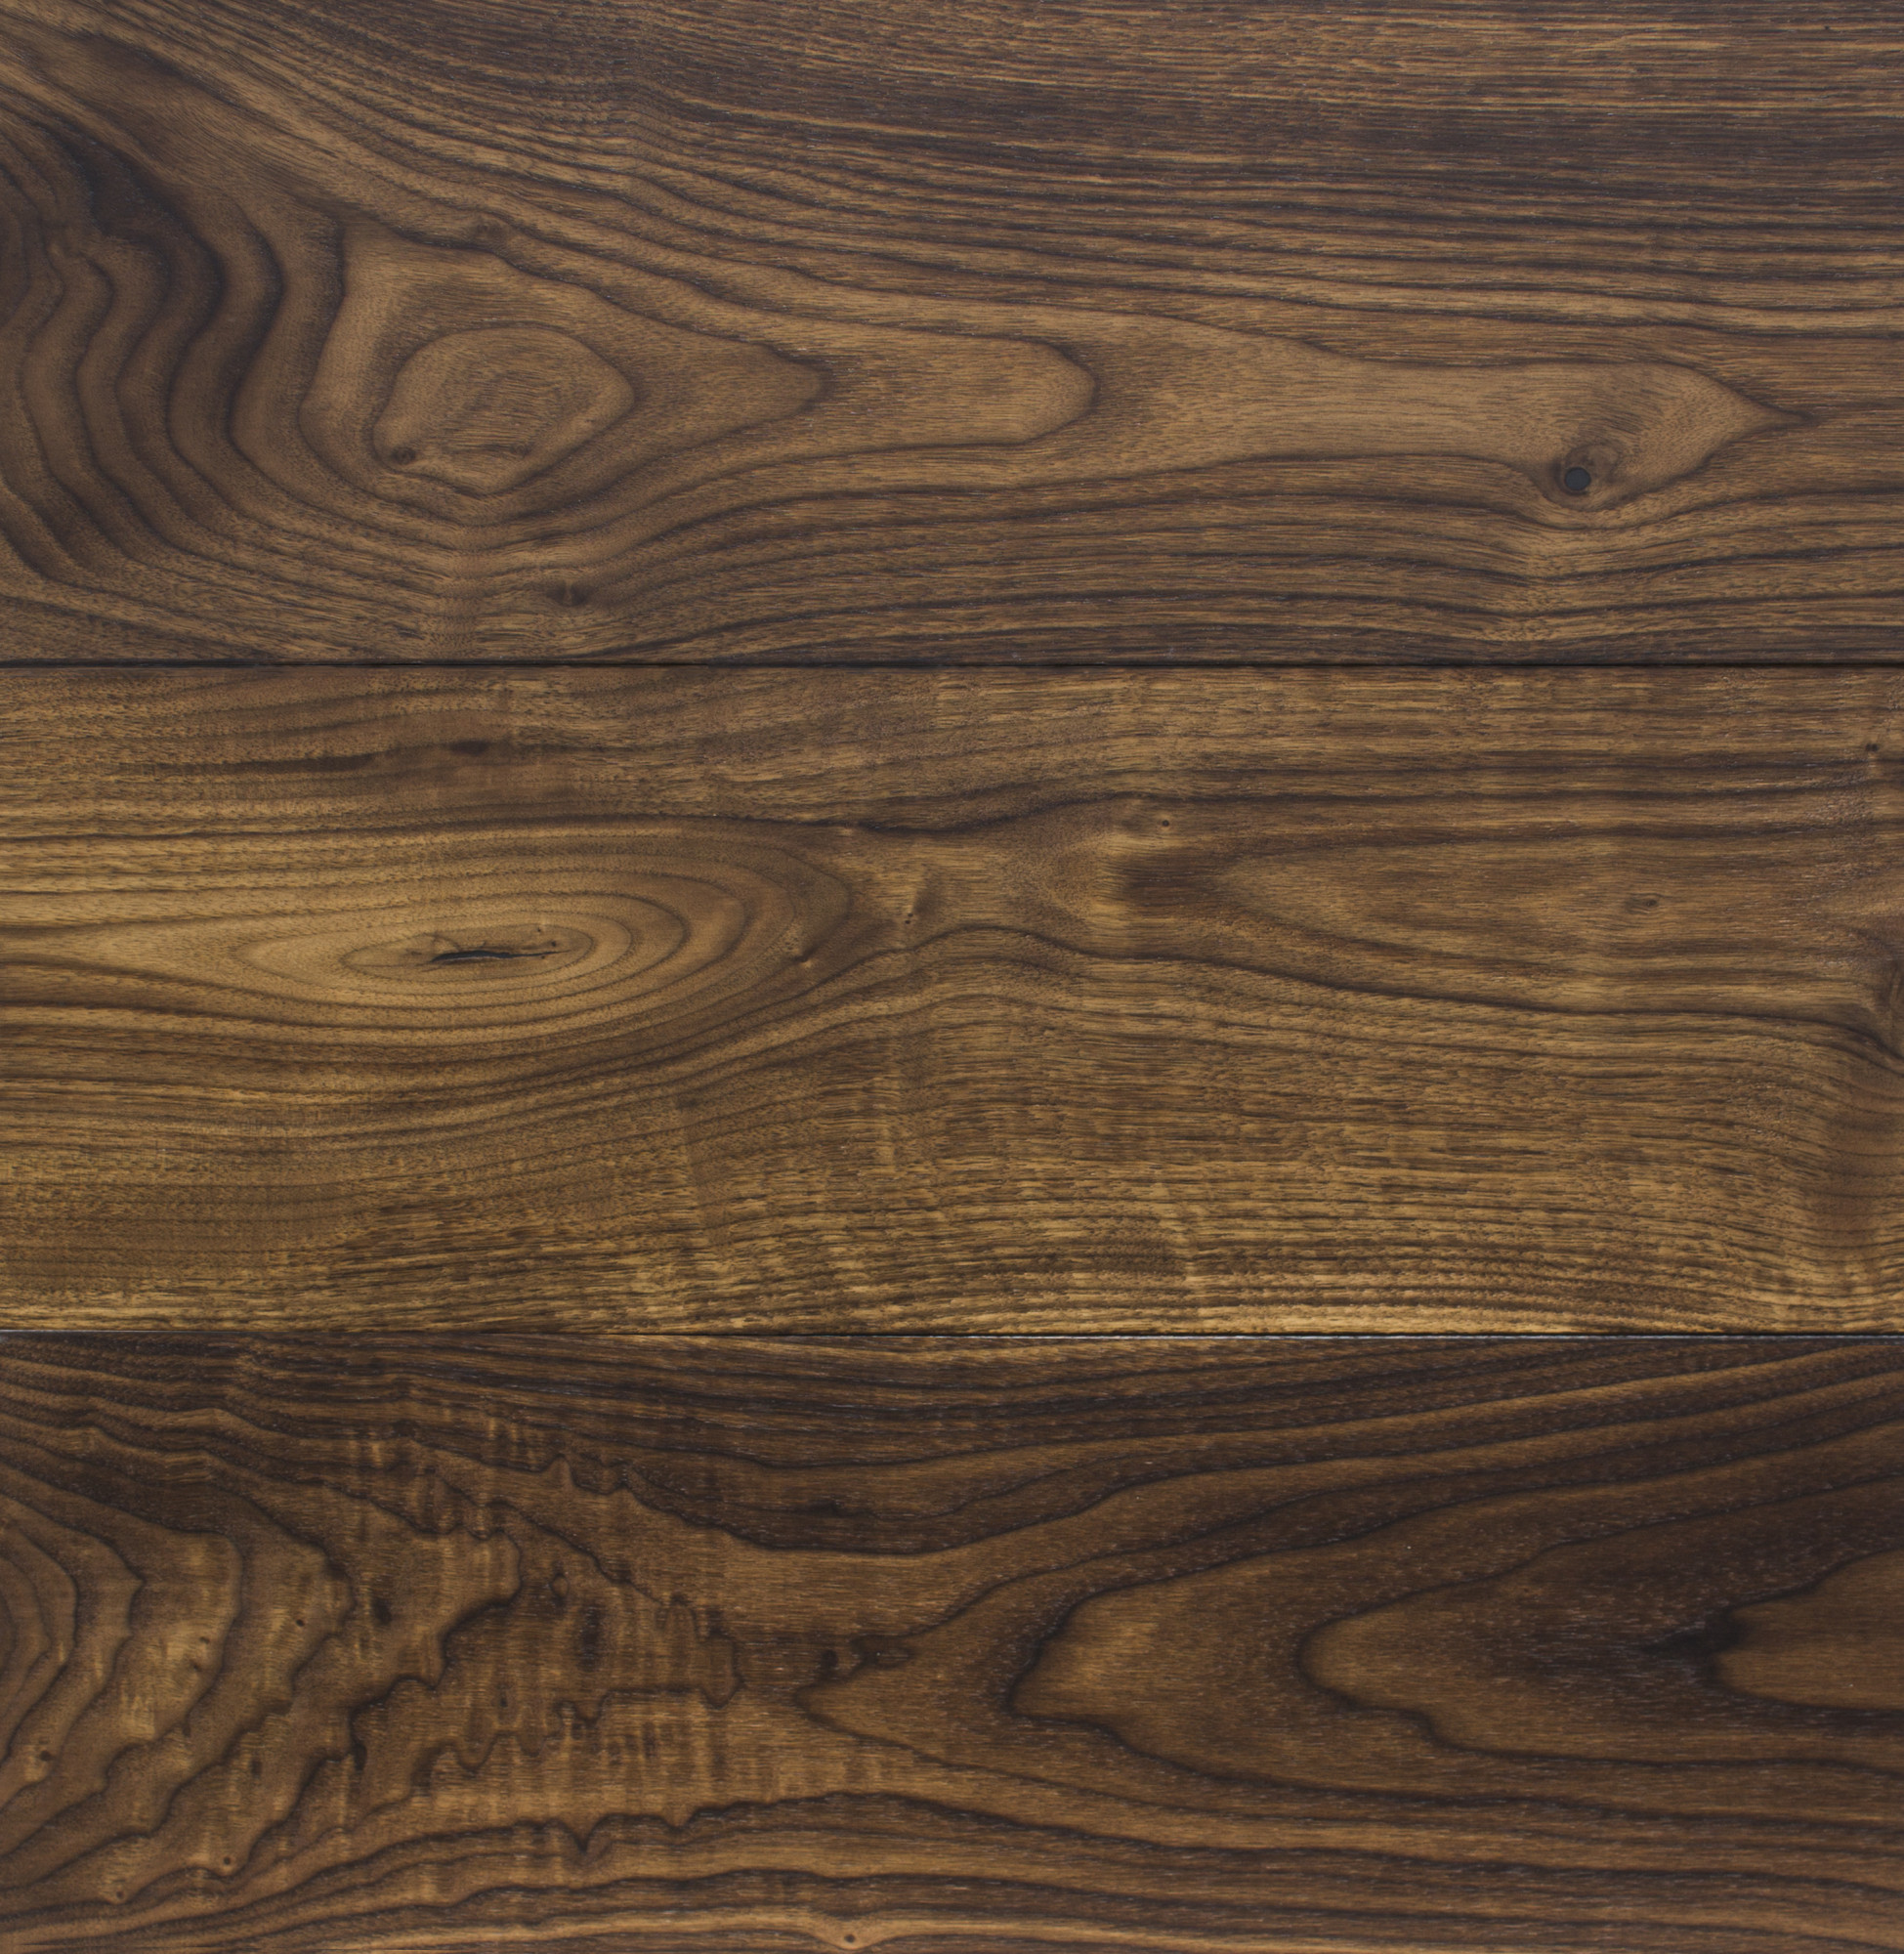 Kurumi Black Walnut Resawn Timber Co, Black Walnut Laminate Flooring